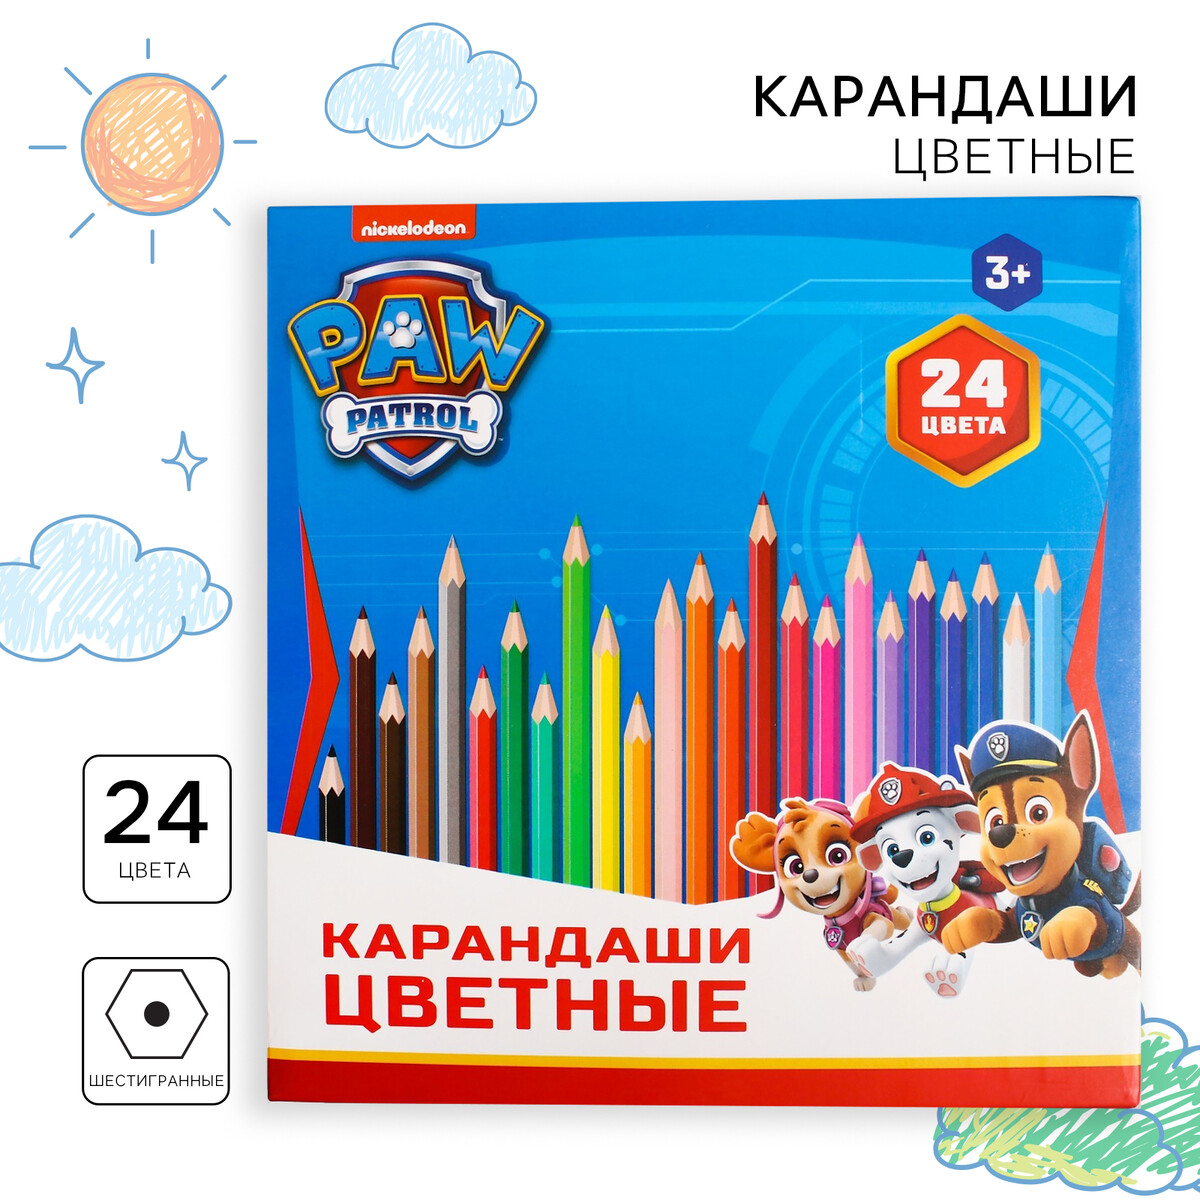 Цветные карандаши, 12 цветов, трехгранные, щенячий патруль